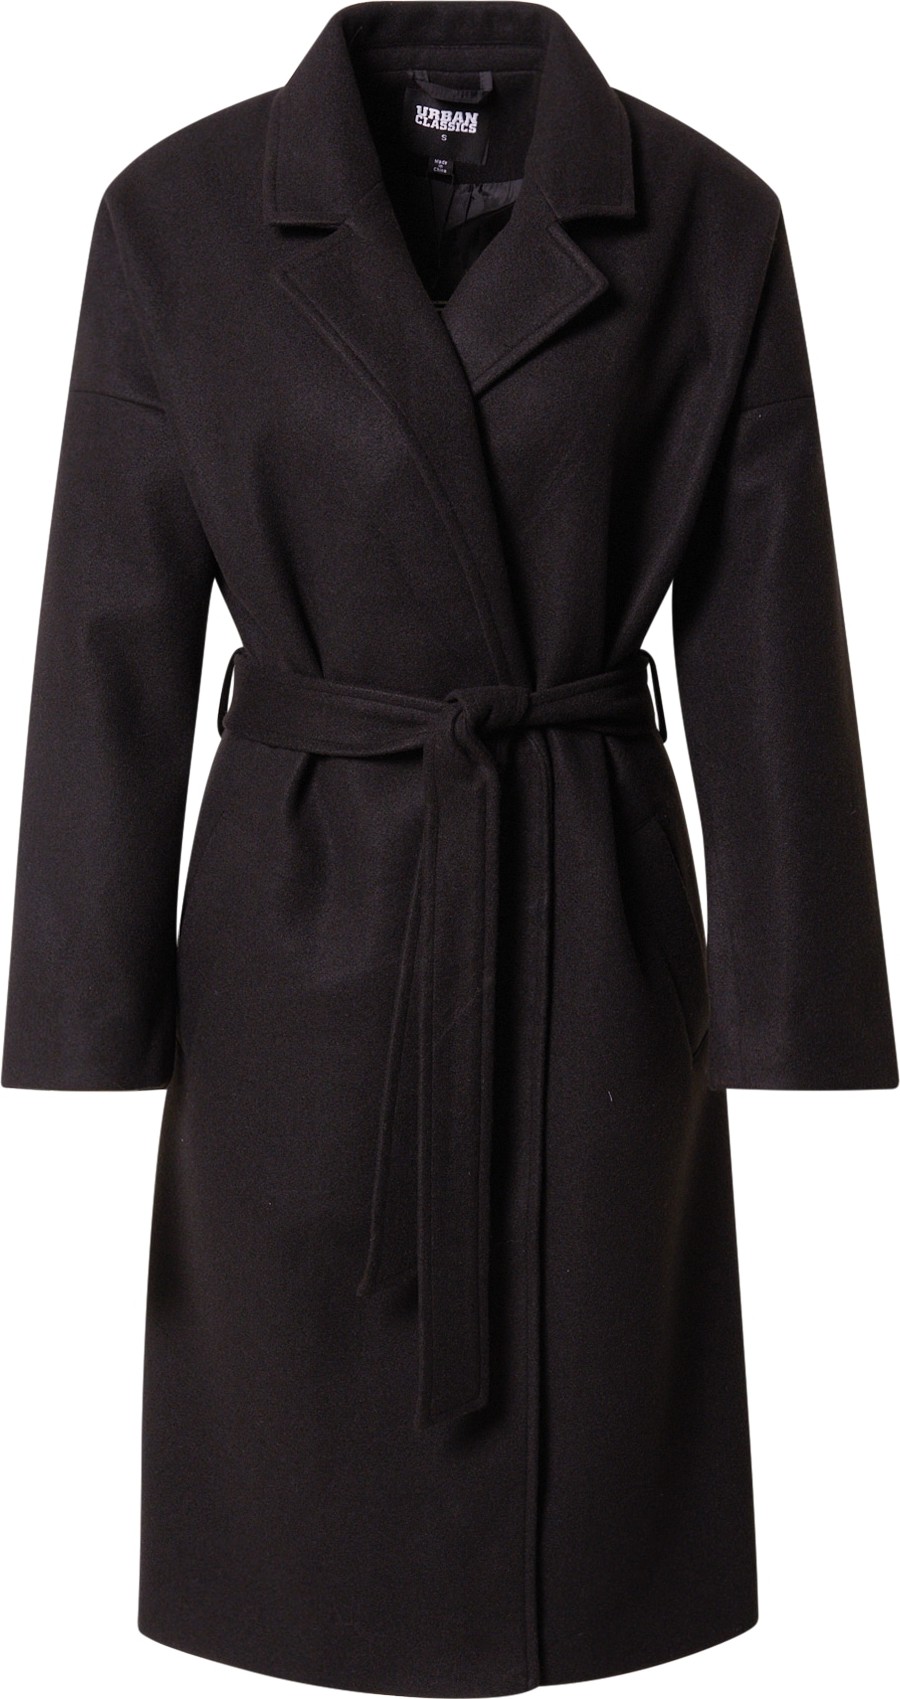 Urban Classics Přechodný kabát černá